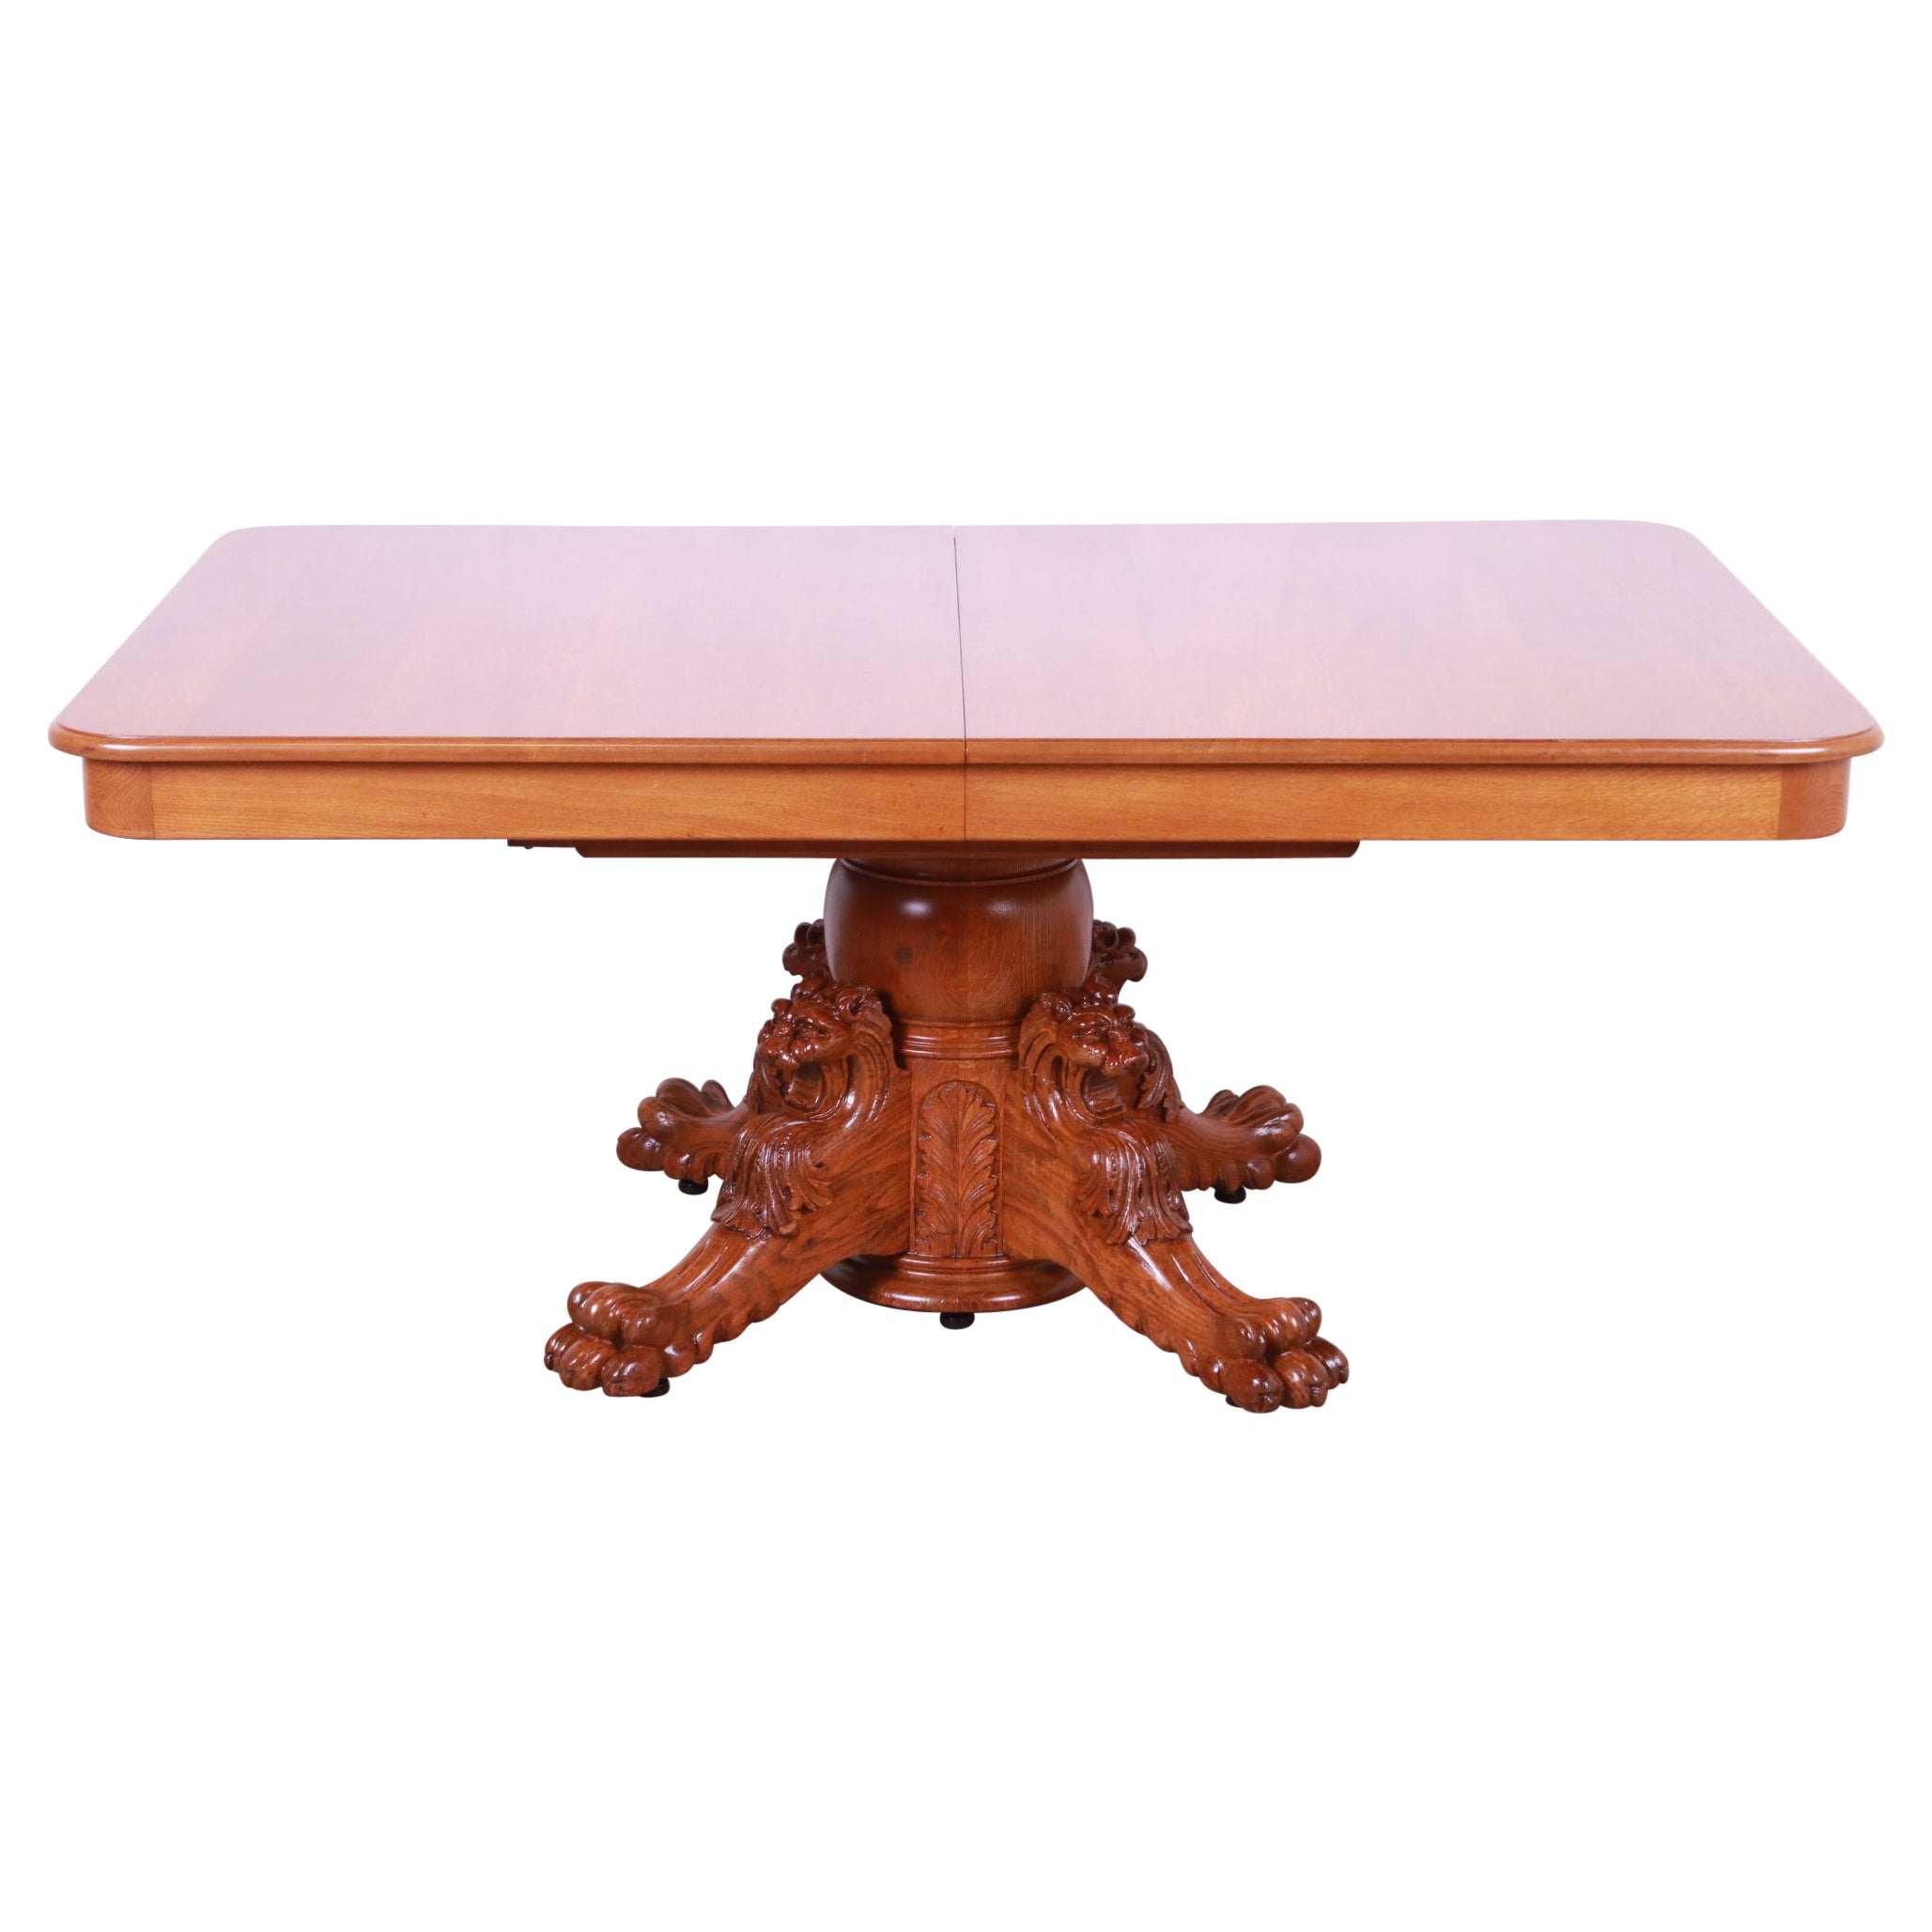 R.J. Horner Antique Victorian Oak Pedestal Dining Table with Carved Lions